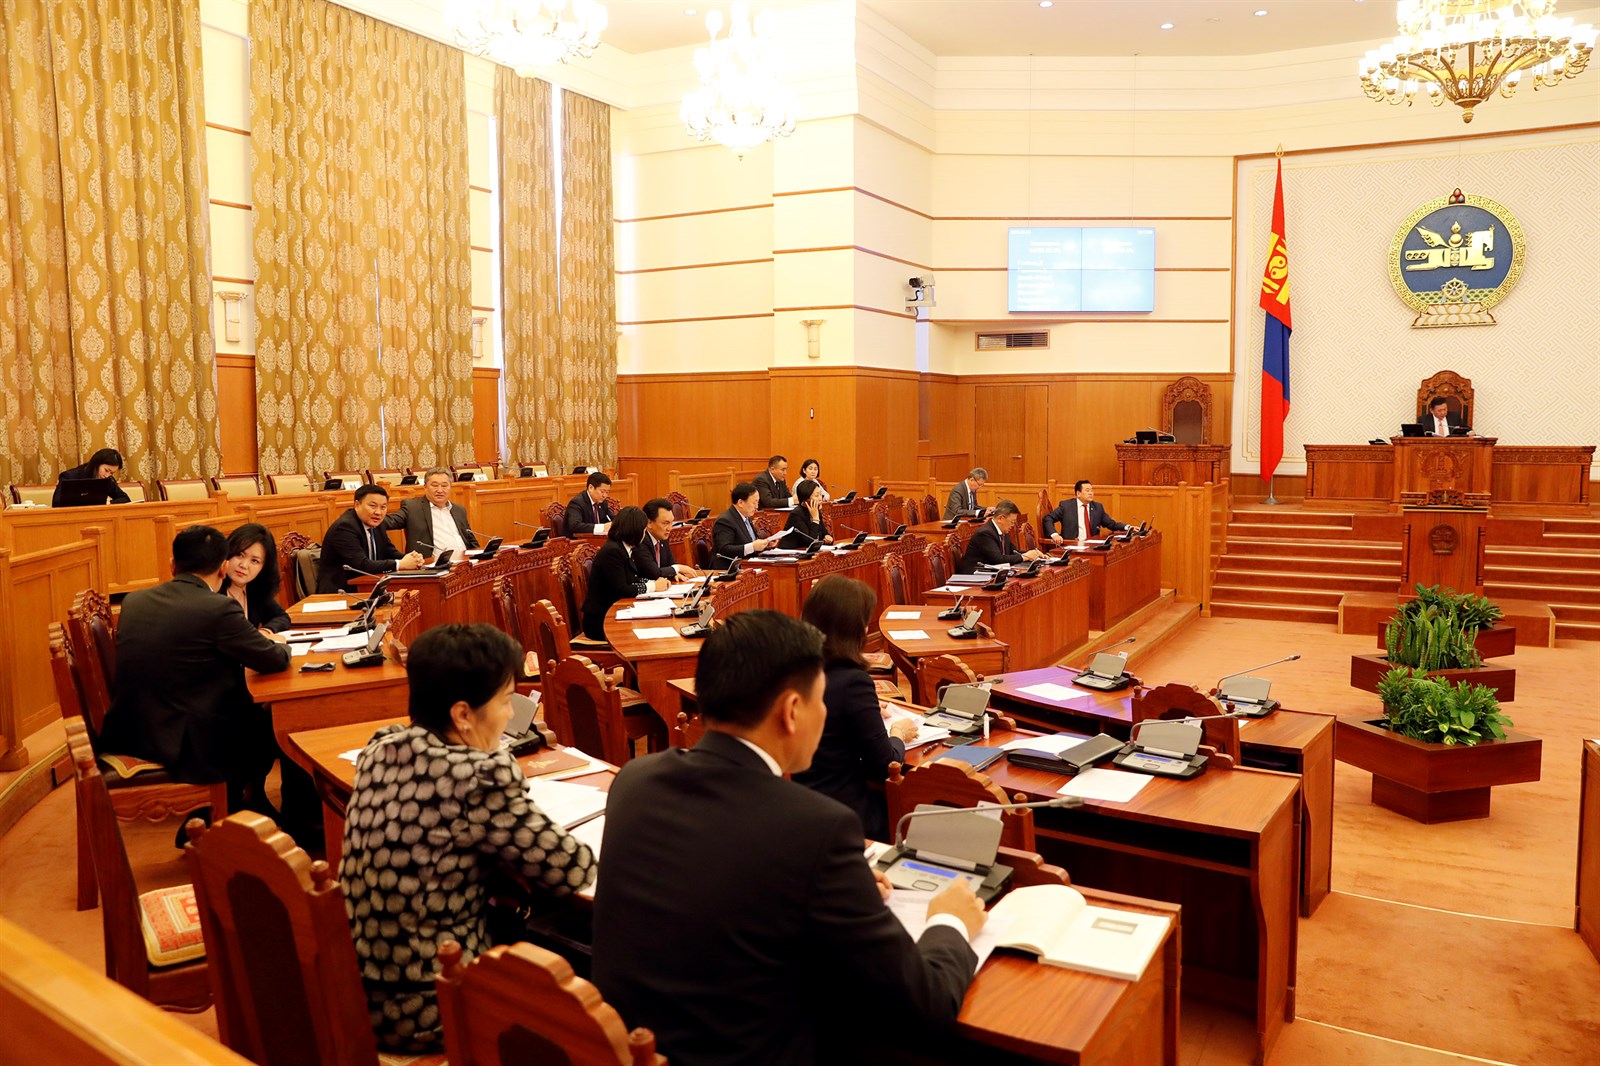 Монгол Улсын эдийн засаг, нийгмийг 2017 онд хөгжүүлэх үндсэн чиглэл 79.3 хувийн биелэлттэй байна